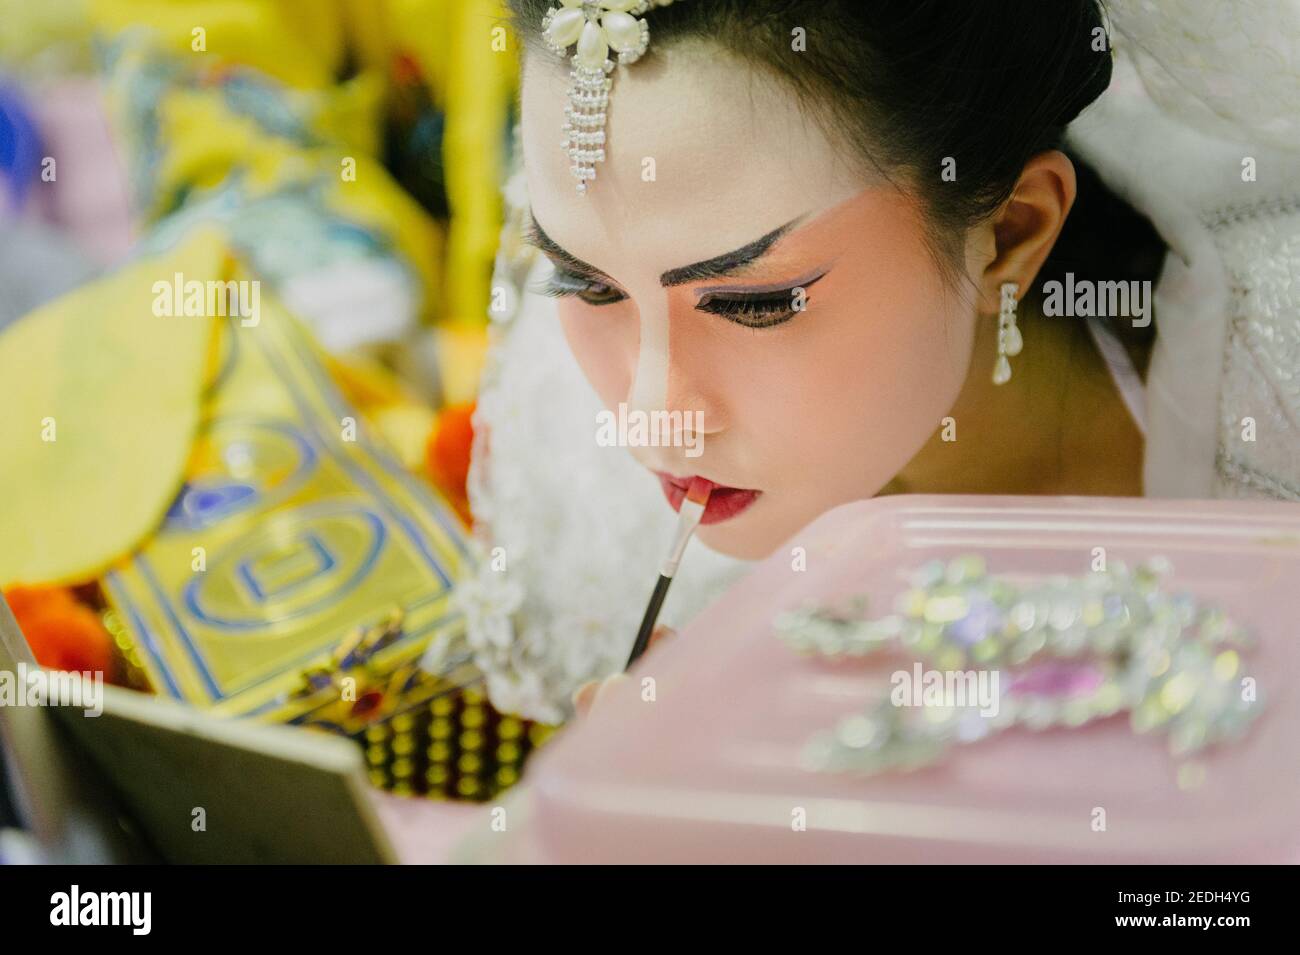 Gros plan d'une jeune femme joueuse d'opéra chinoise dans les coulisses. Elle met son maquillage avant de passer sur scène. Banque D'Images